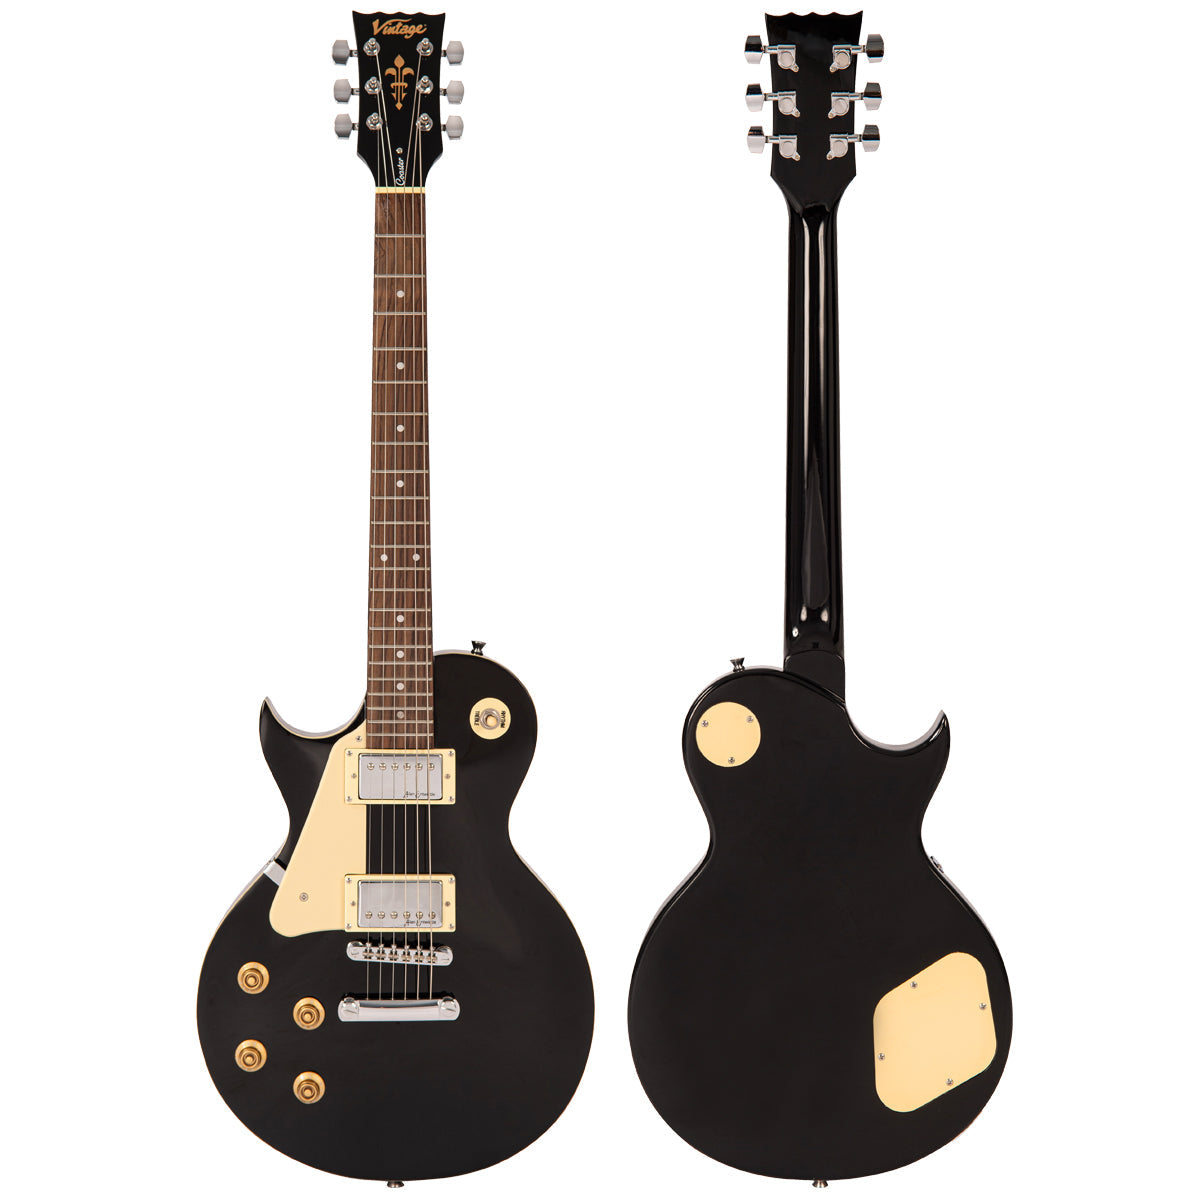 Vintage V10 Coaster Series Electric Guitar ~ Left Hand Boulevard Black, Left Hand Electric Guitars for sale at Richards Guitars.